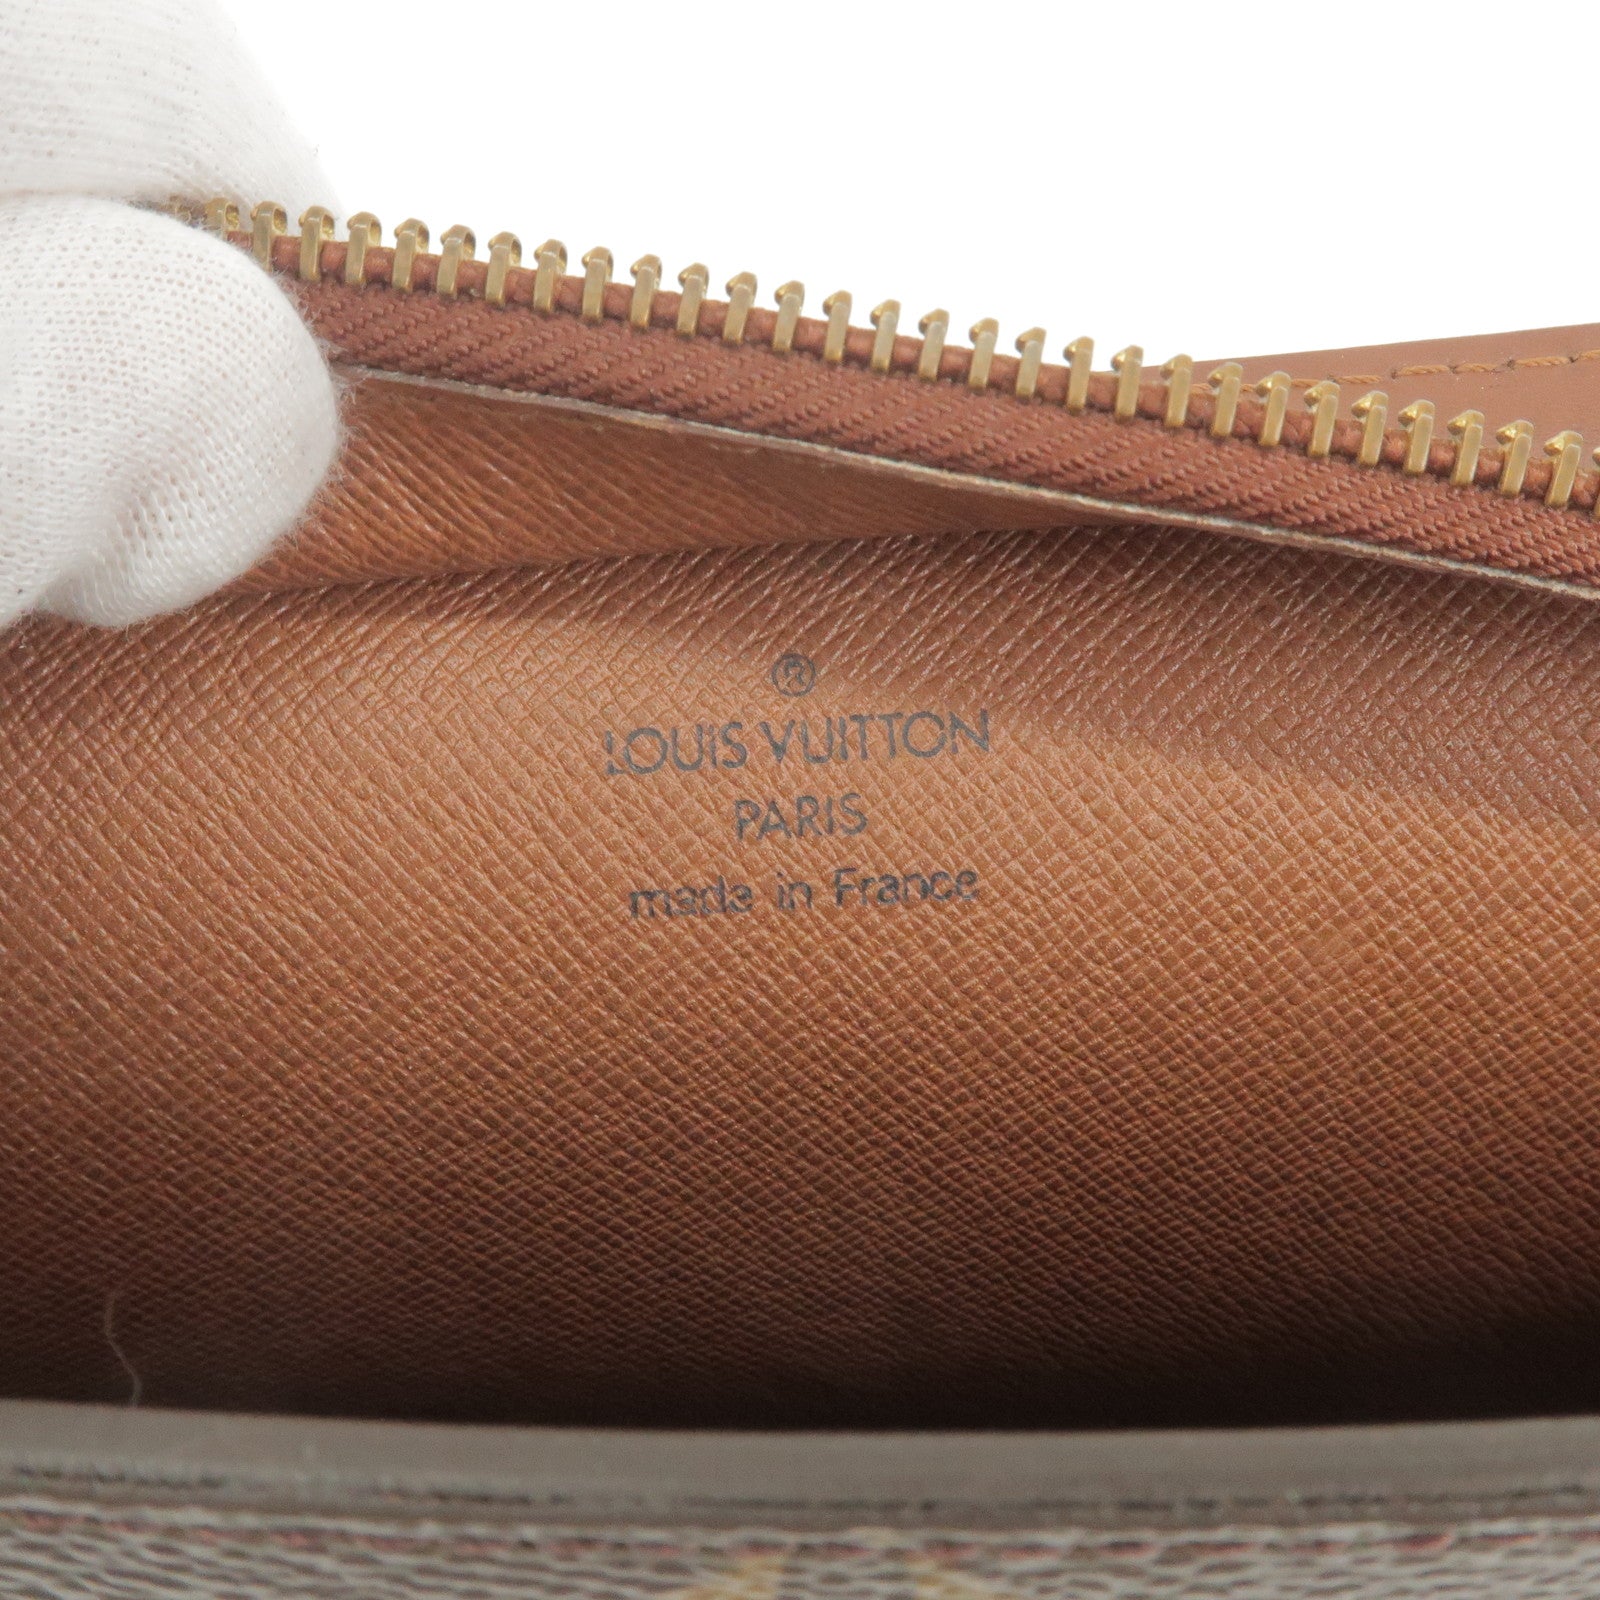 Auth Louis Vuitton Monogram Pochette Homme Clutch Bag M51795 Used